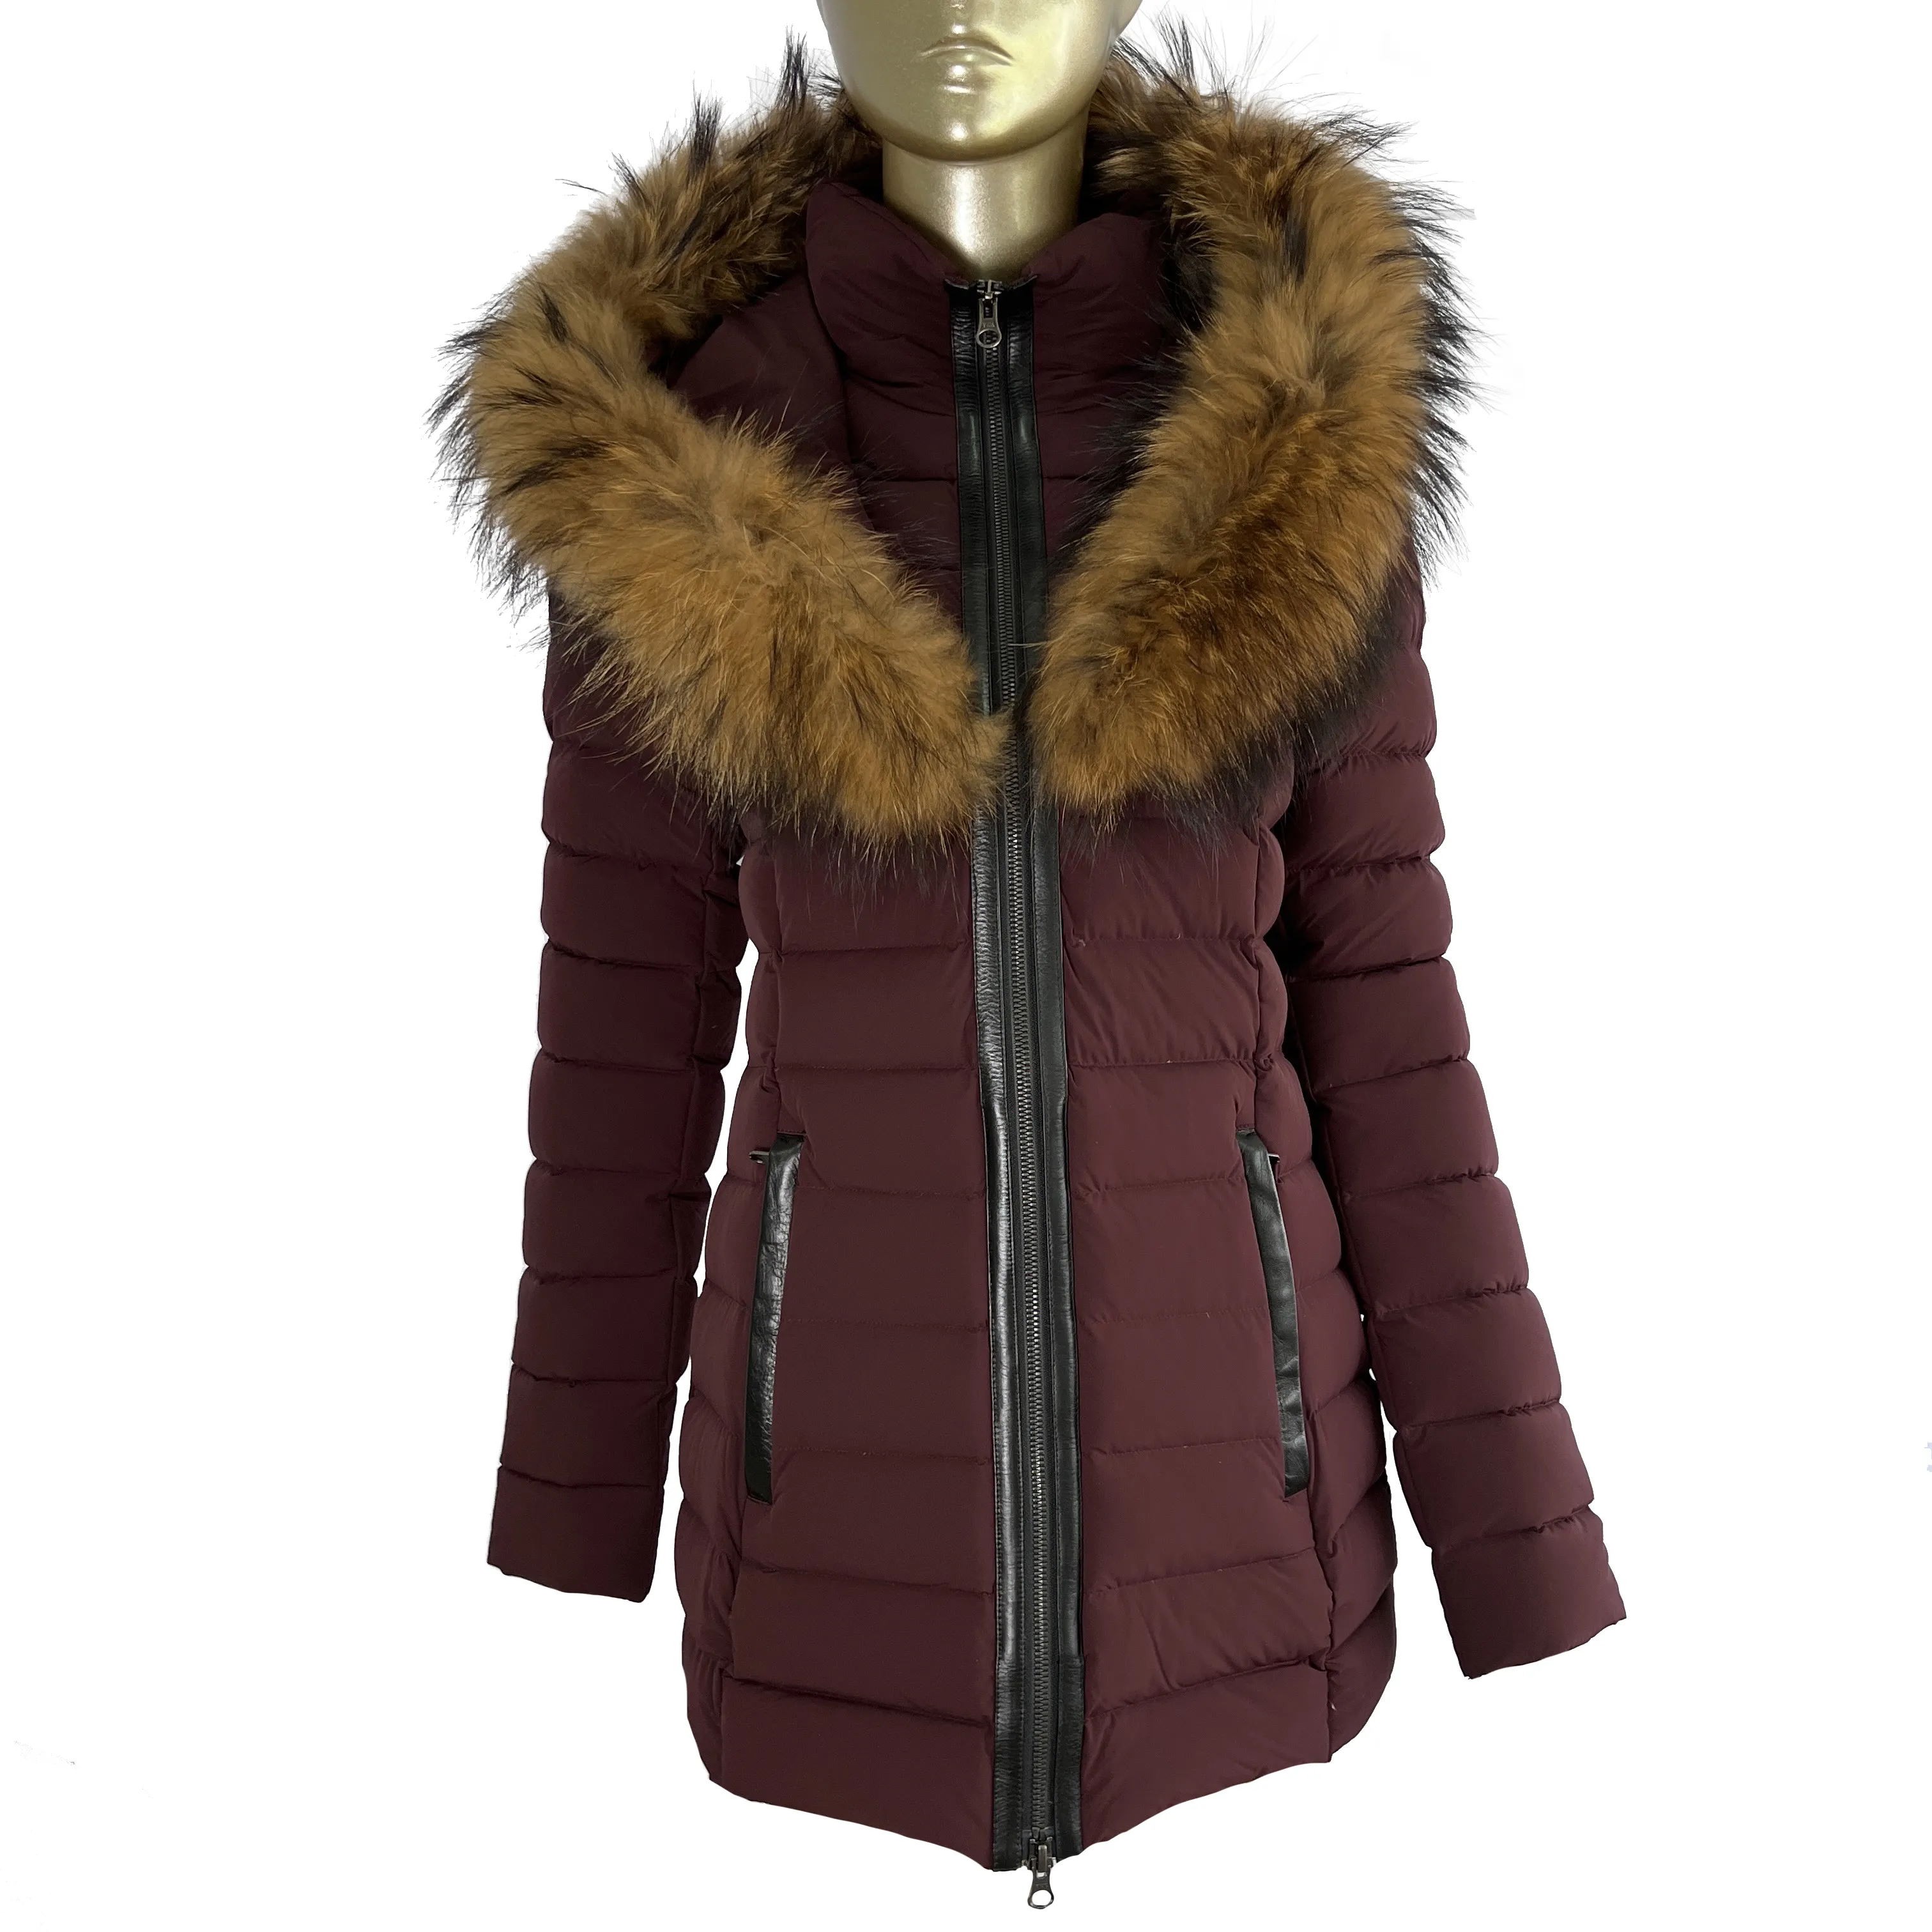 Moda kış uzun palto toptan uzun ördek aşağı ceket kapşonlu kadın sıcak ceketler